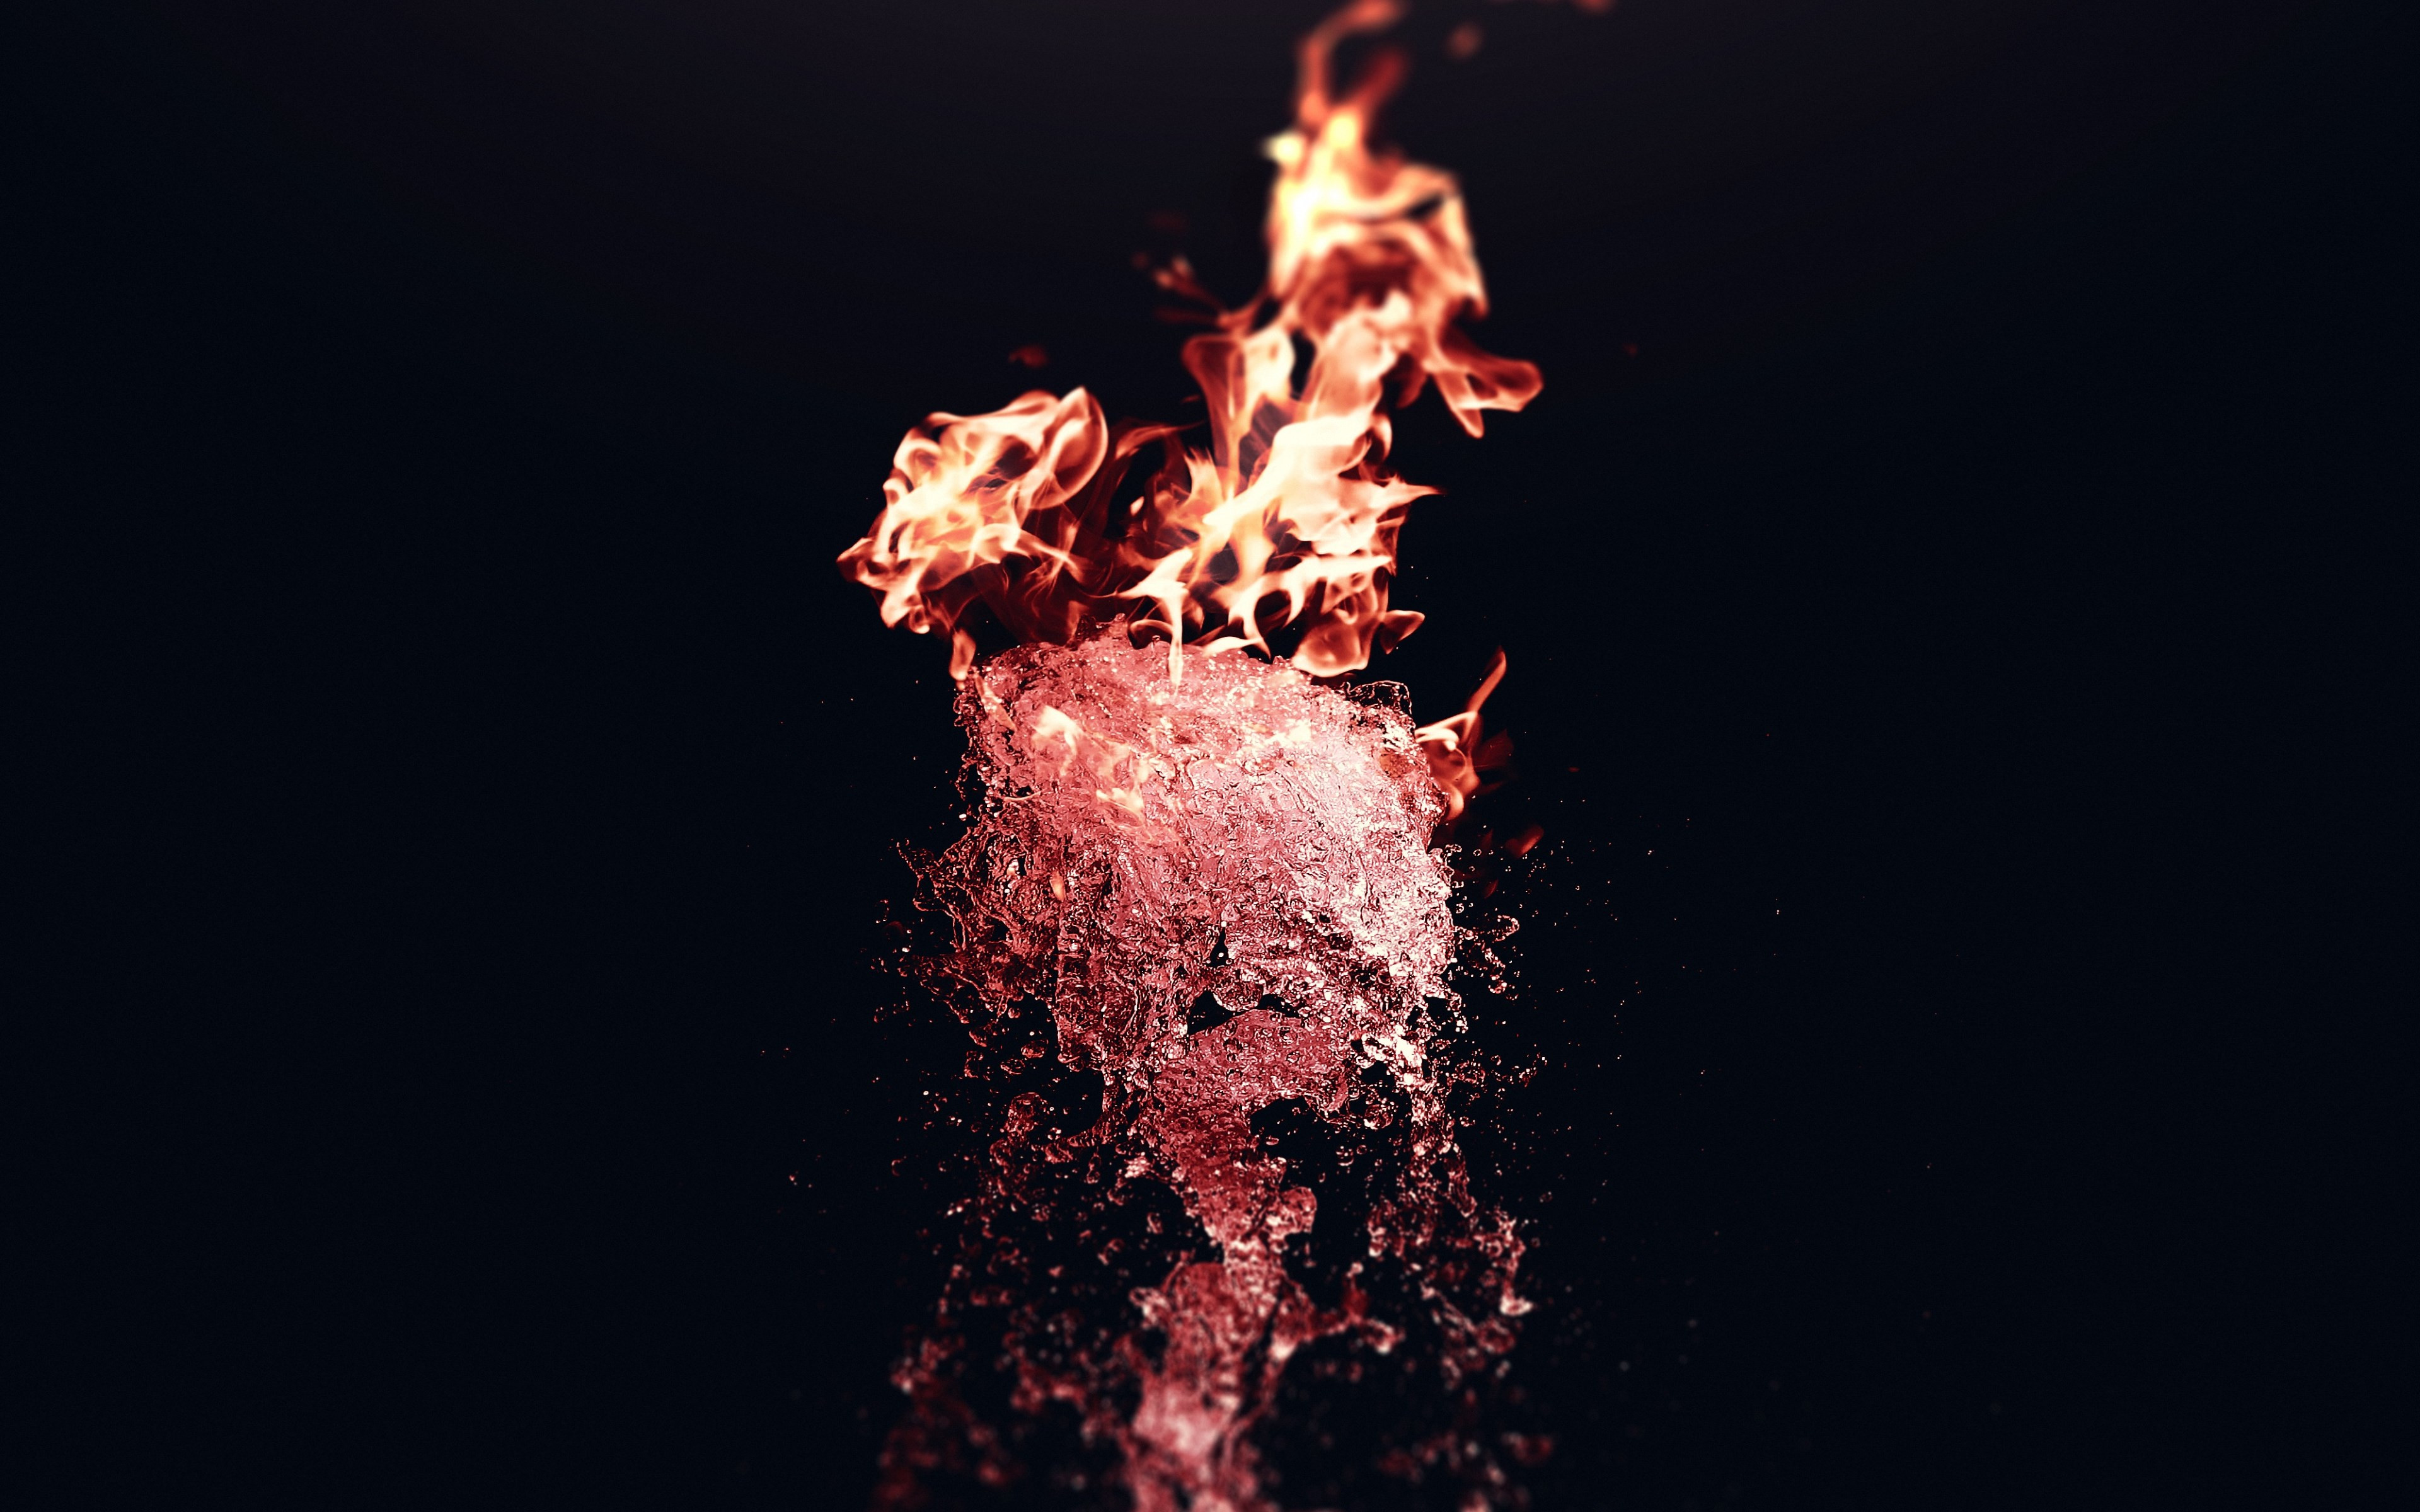 Fire vs Water wallpaper 3840x2400